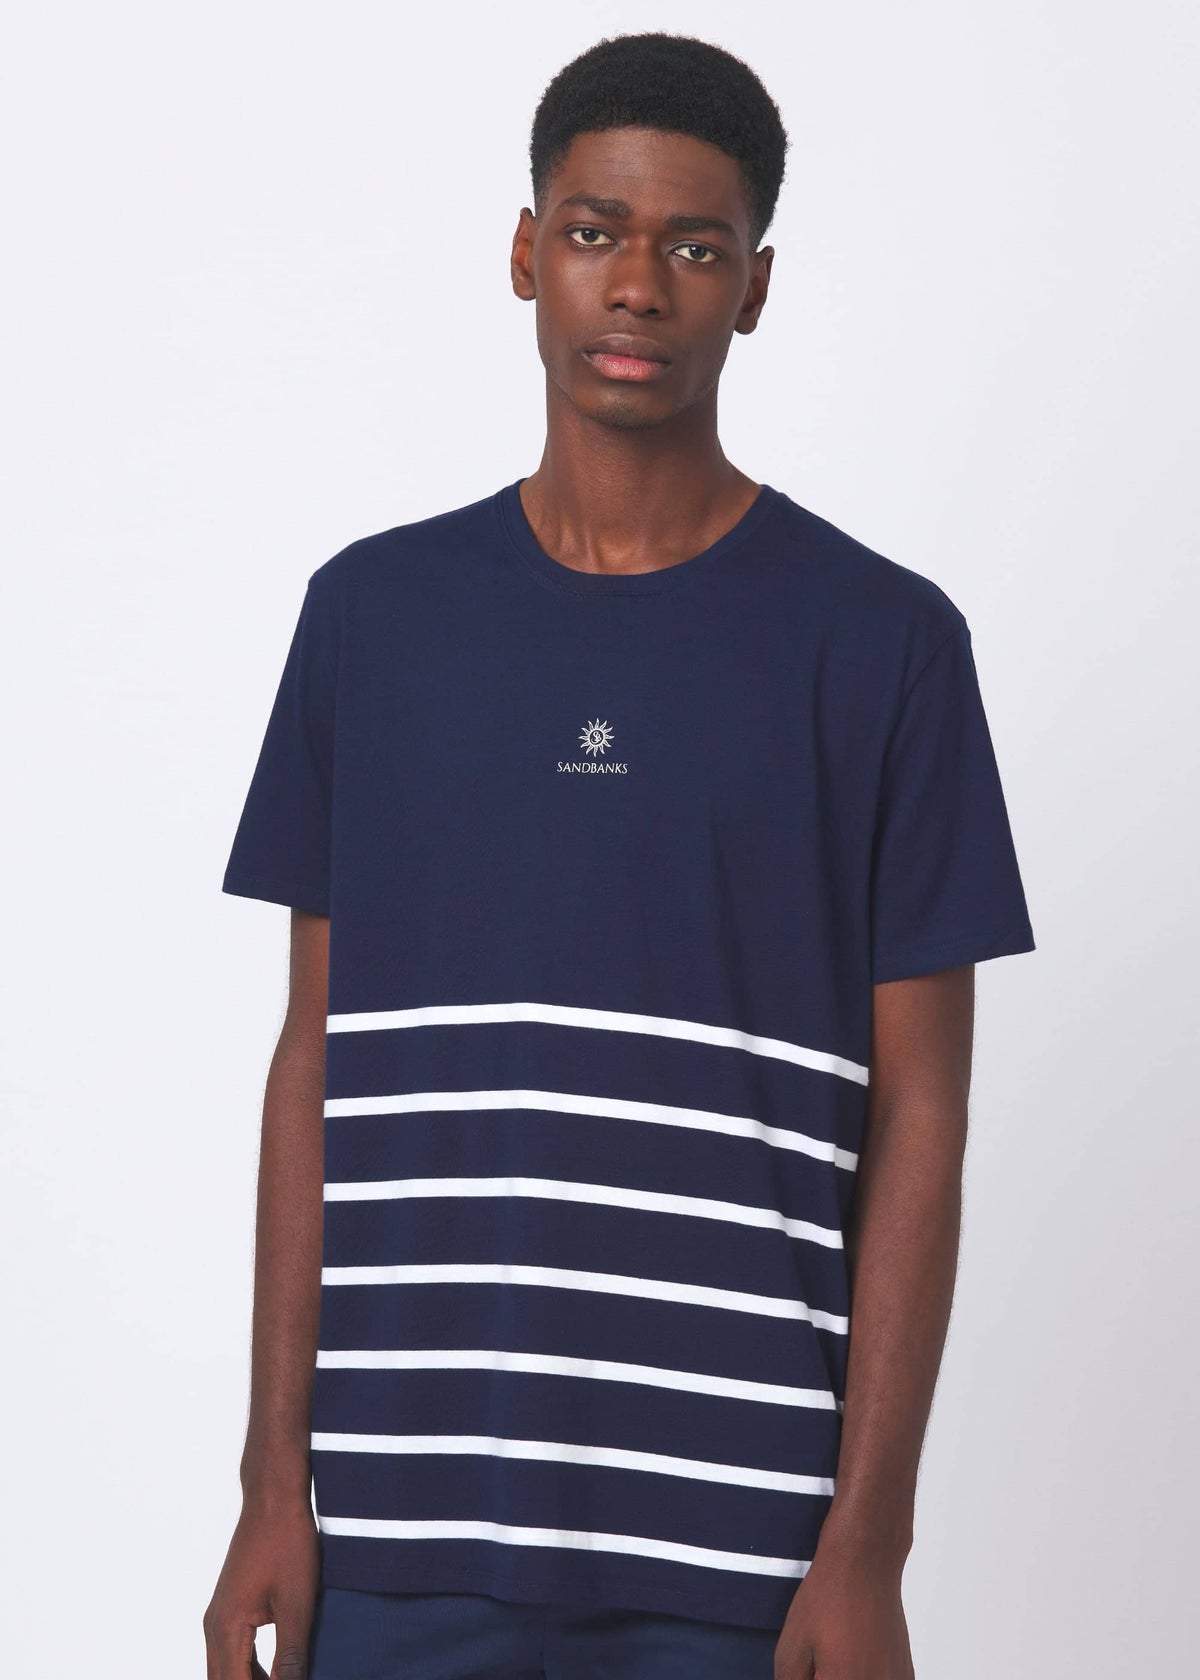 Sandbanks Maritime Stripe T-Shirt - Navy/White - Sandbanks